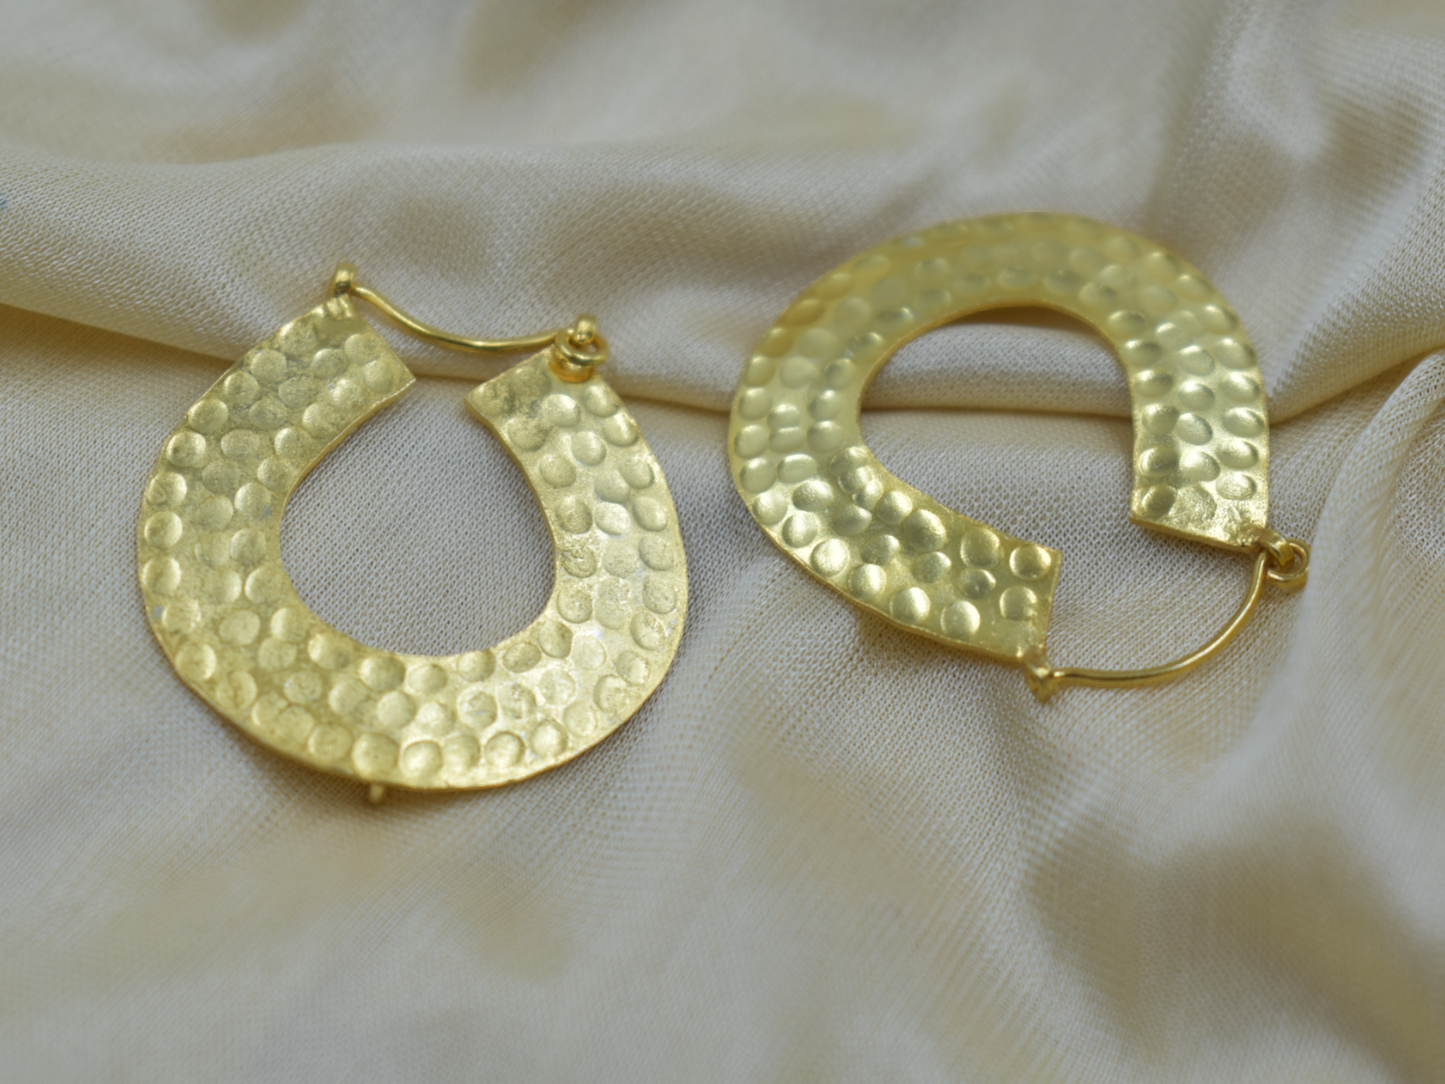 Matte polish goldplated brass hoop earing